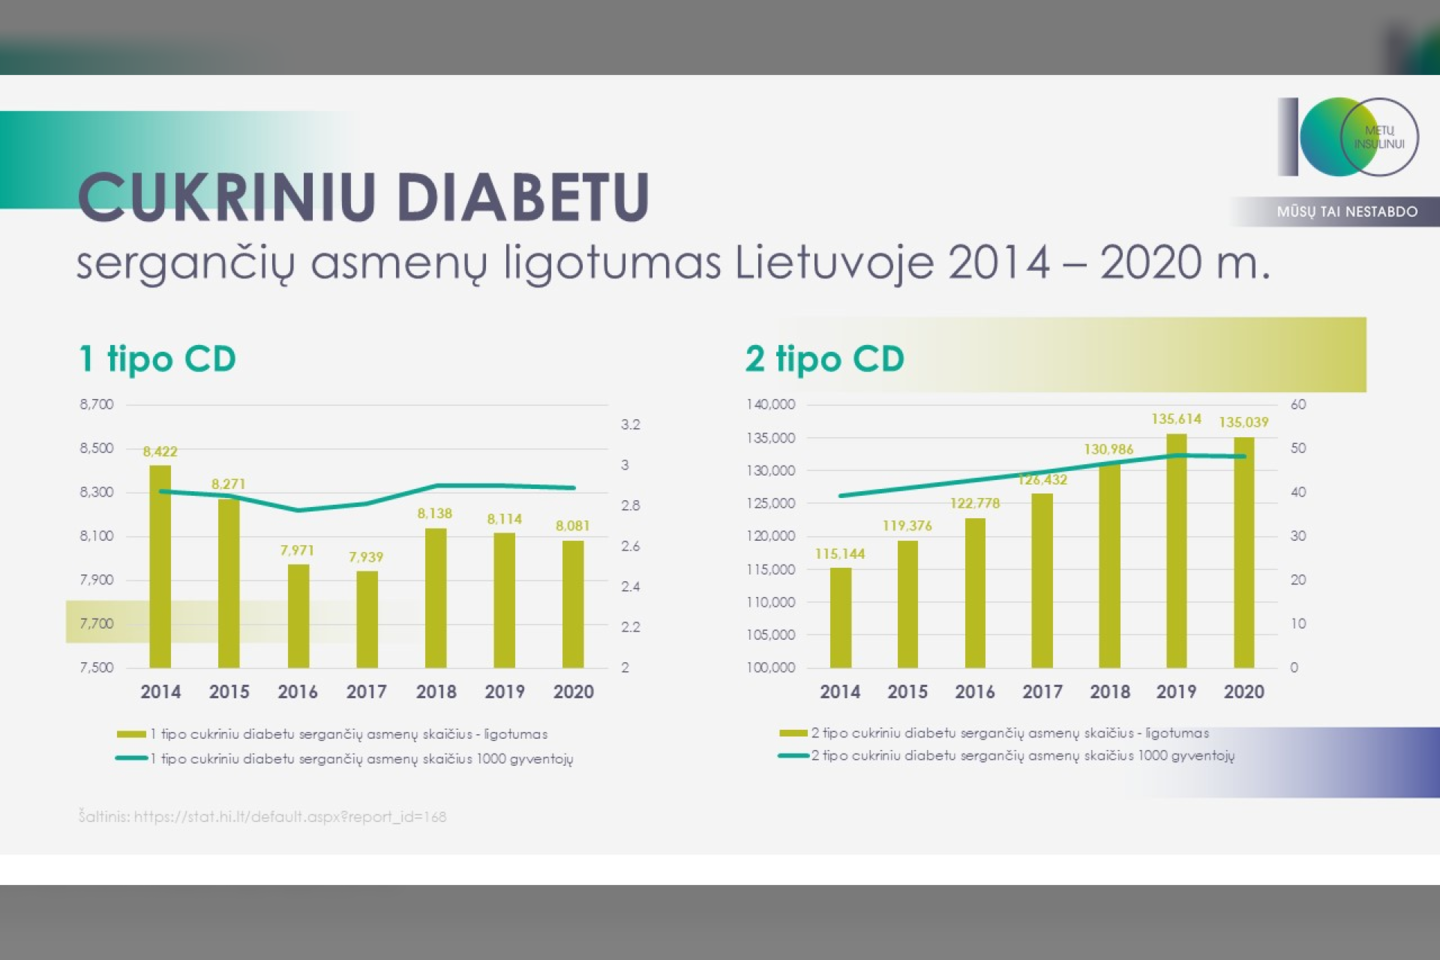 Sergamumas diabetu Lietuvoje 2014-2020 m.<br>Pranešimo spaudai nuotr.